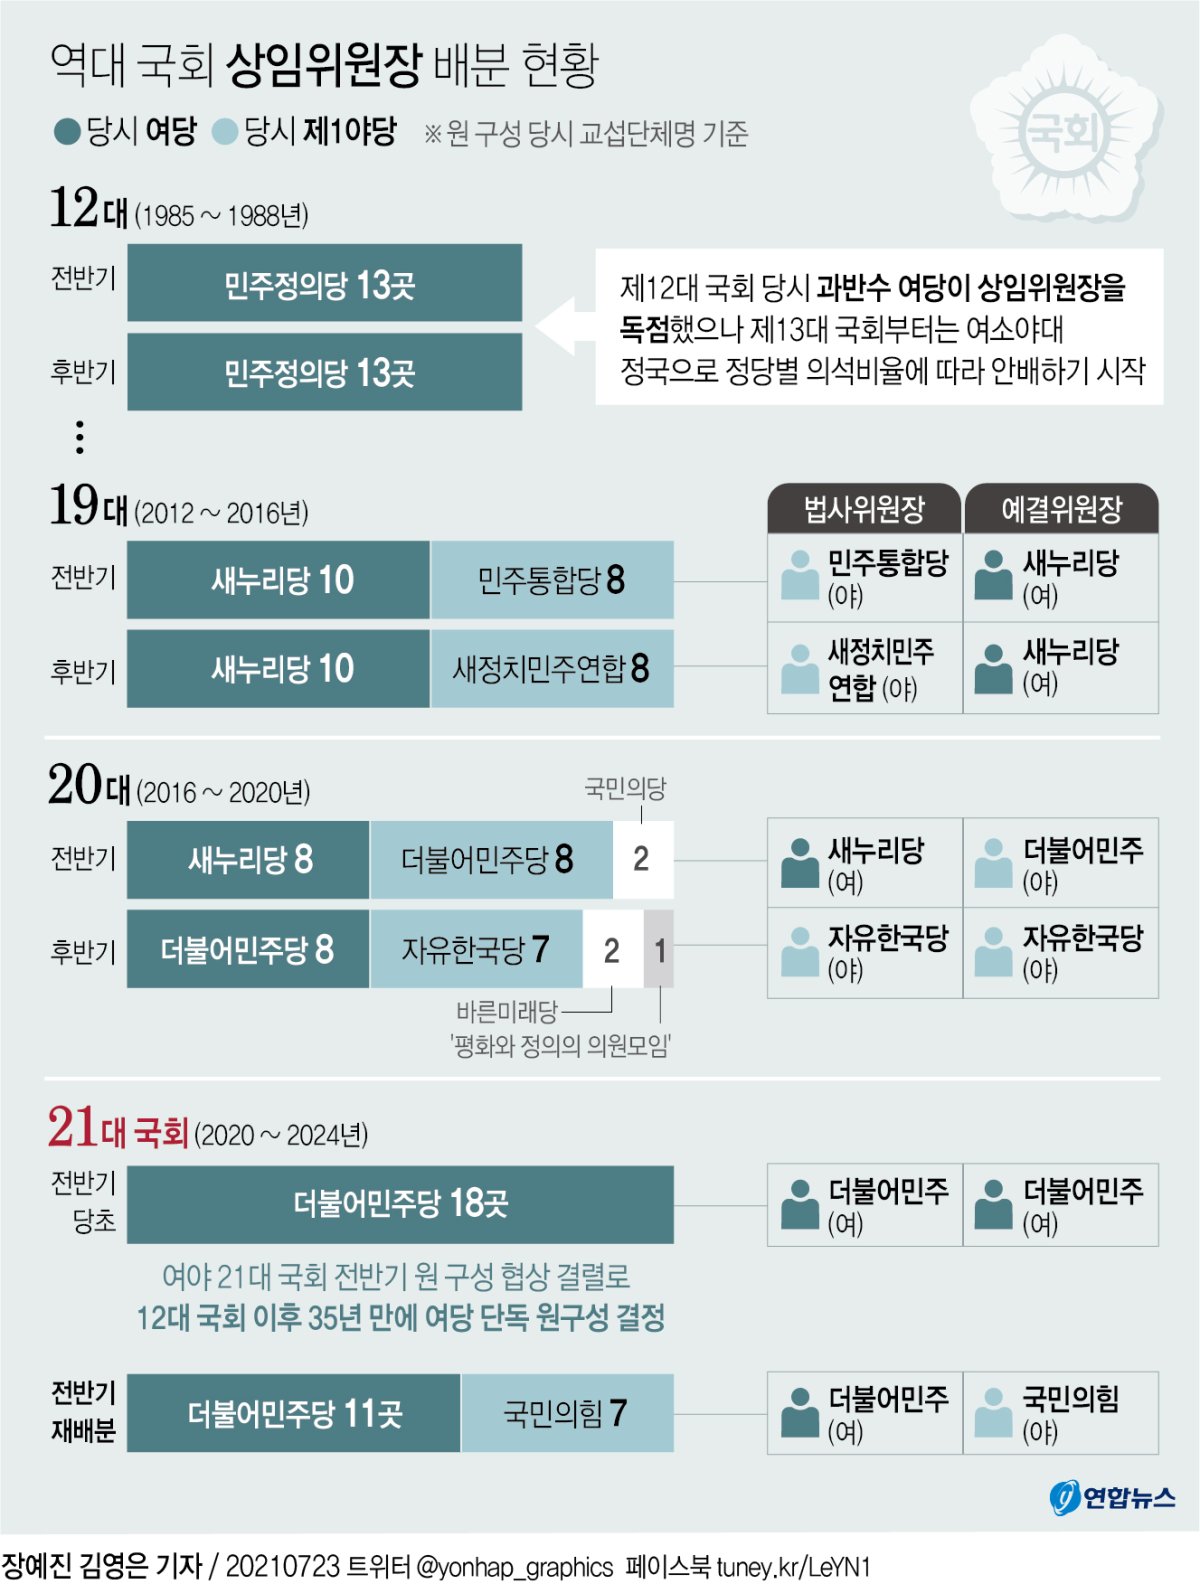 [그래픽] 역대 국회 상임위원장 배분 현황